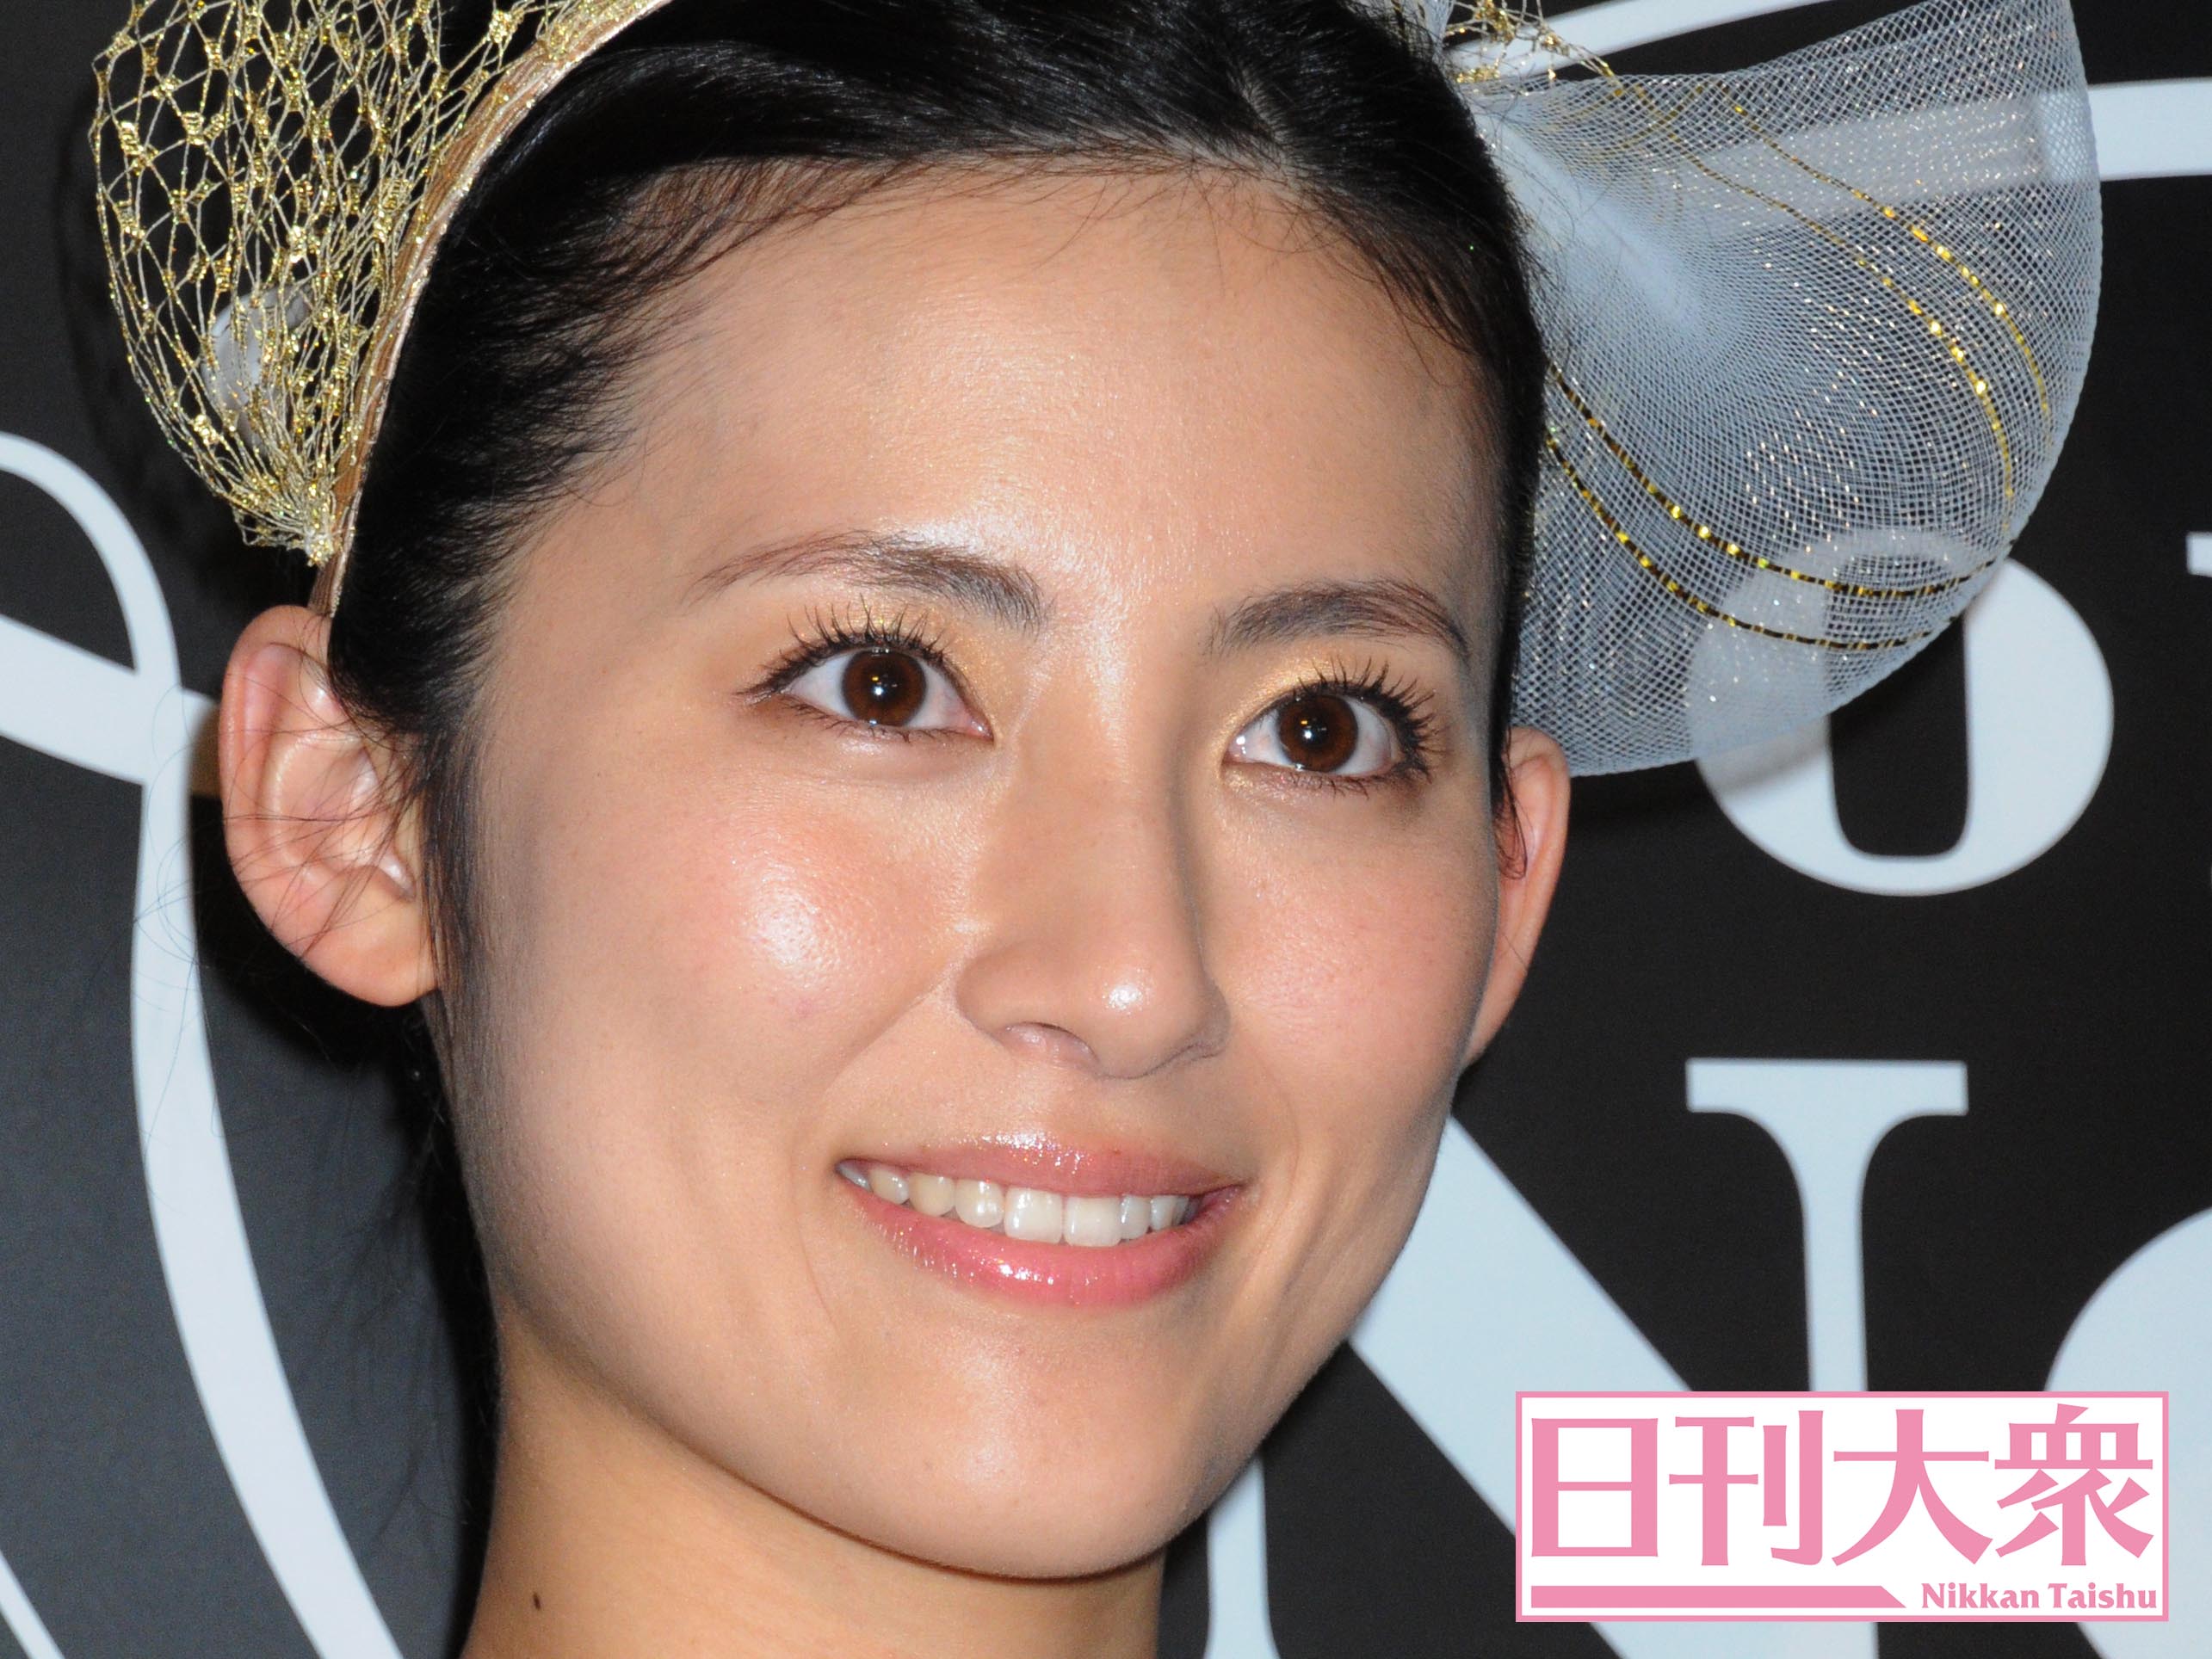 福田彩乃は2位 男性が つきあってみたい 女性芸人トップ3 日刊大衆